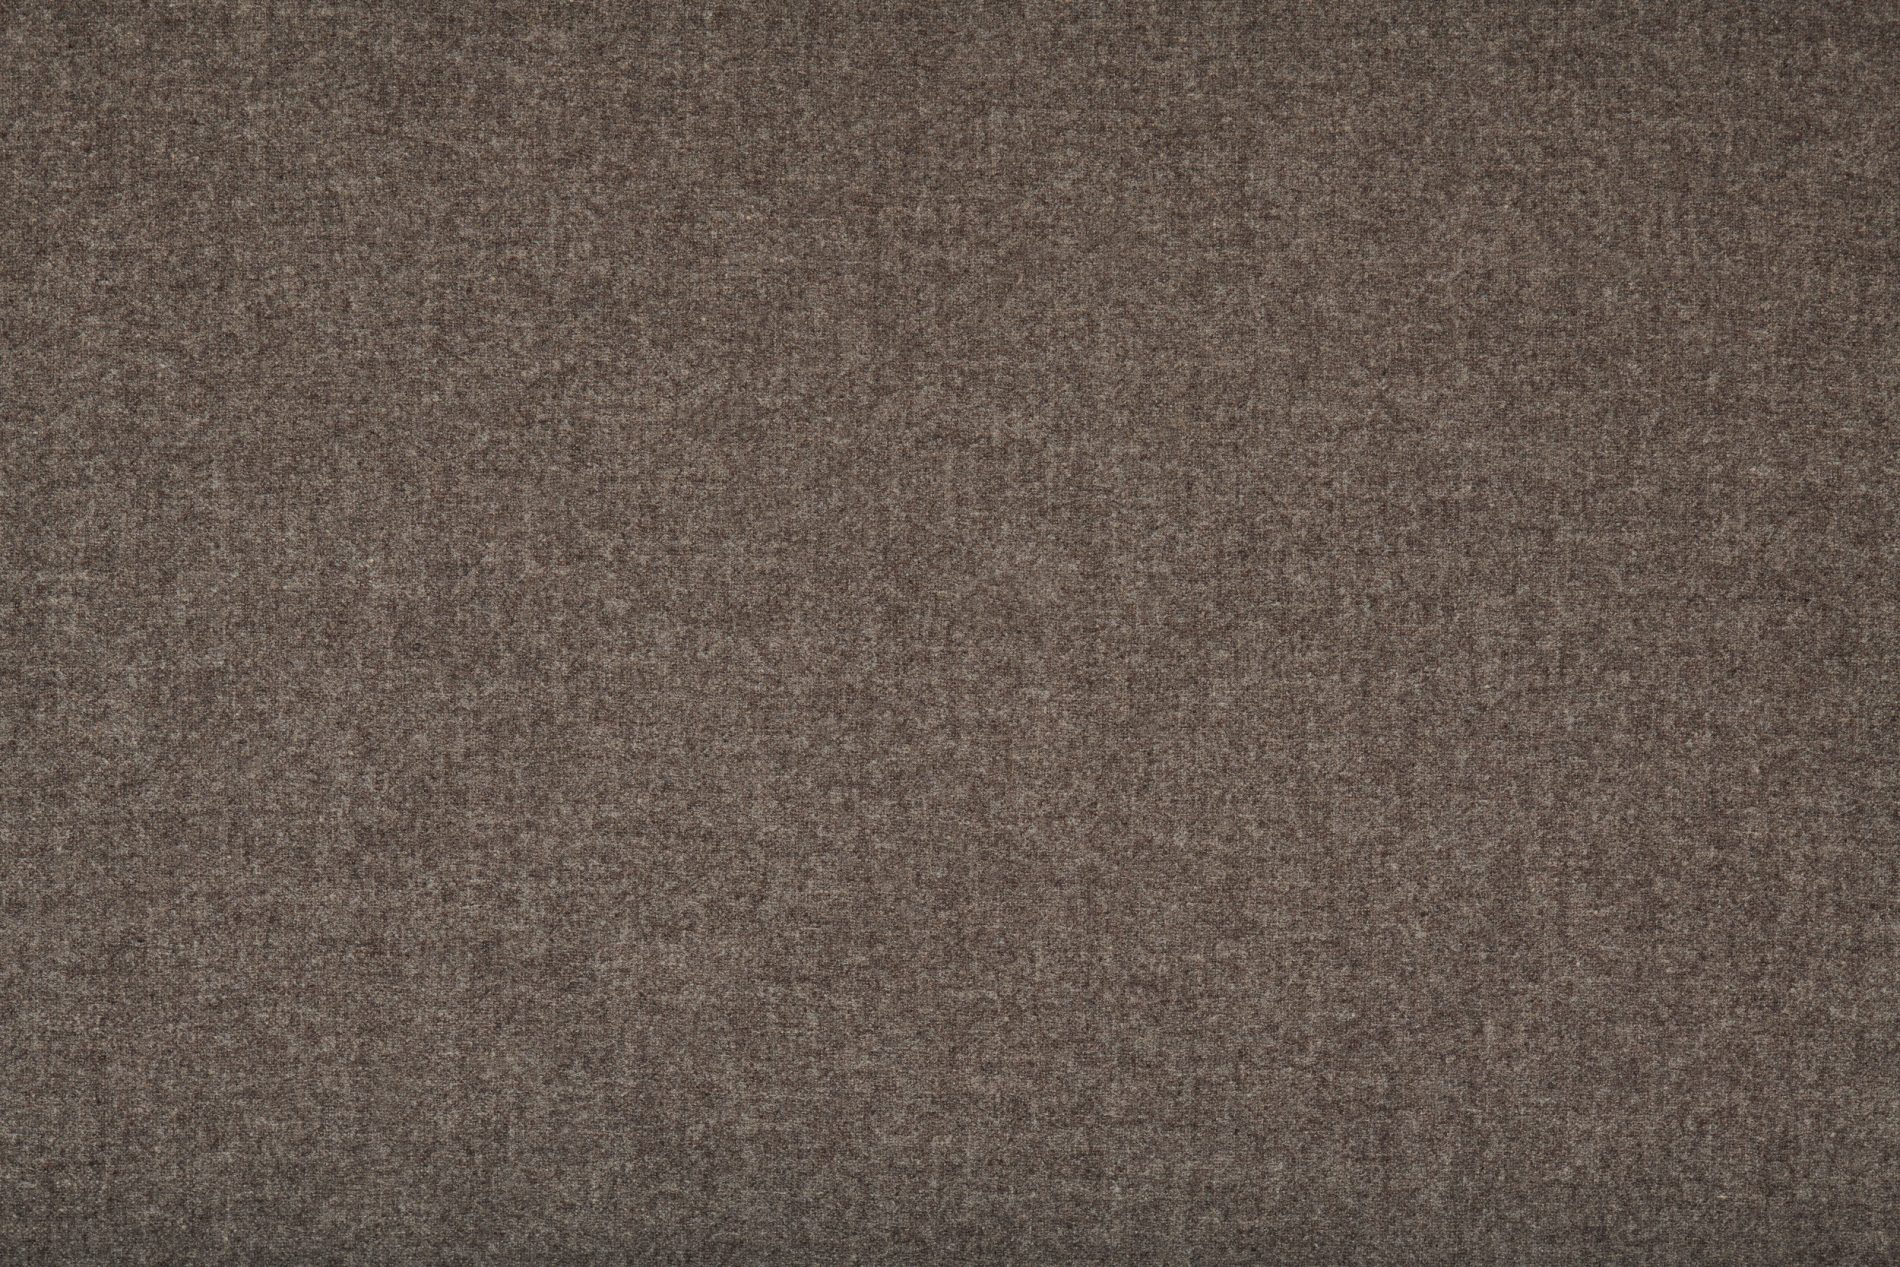 PURE 540 Plain Merino wool (16/5003)